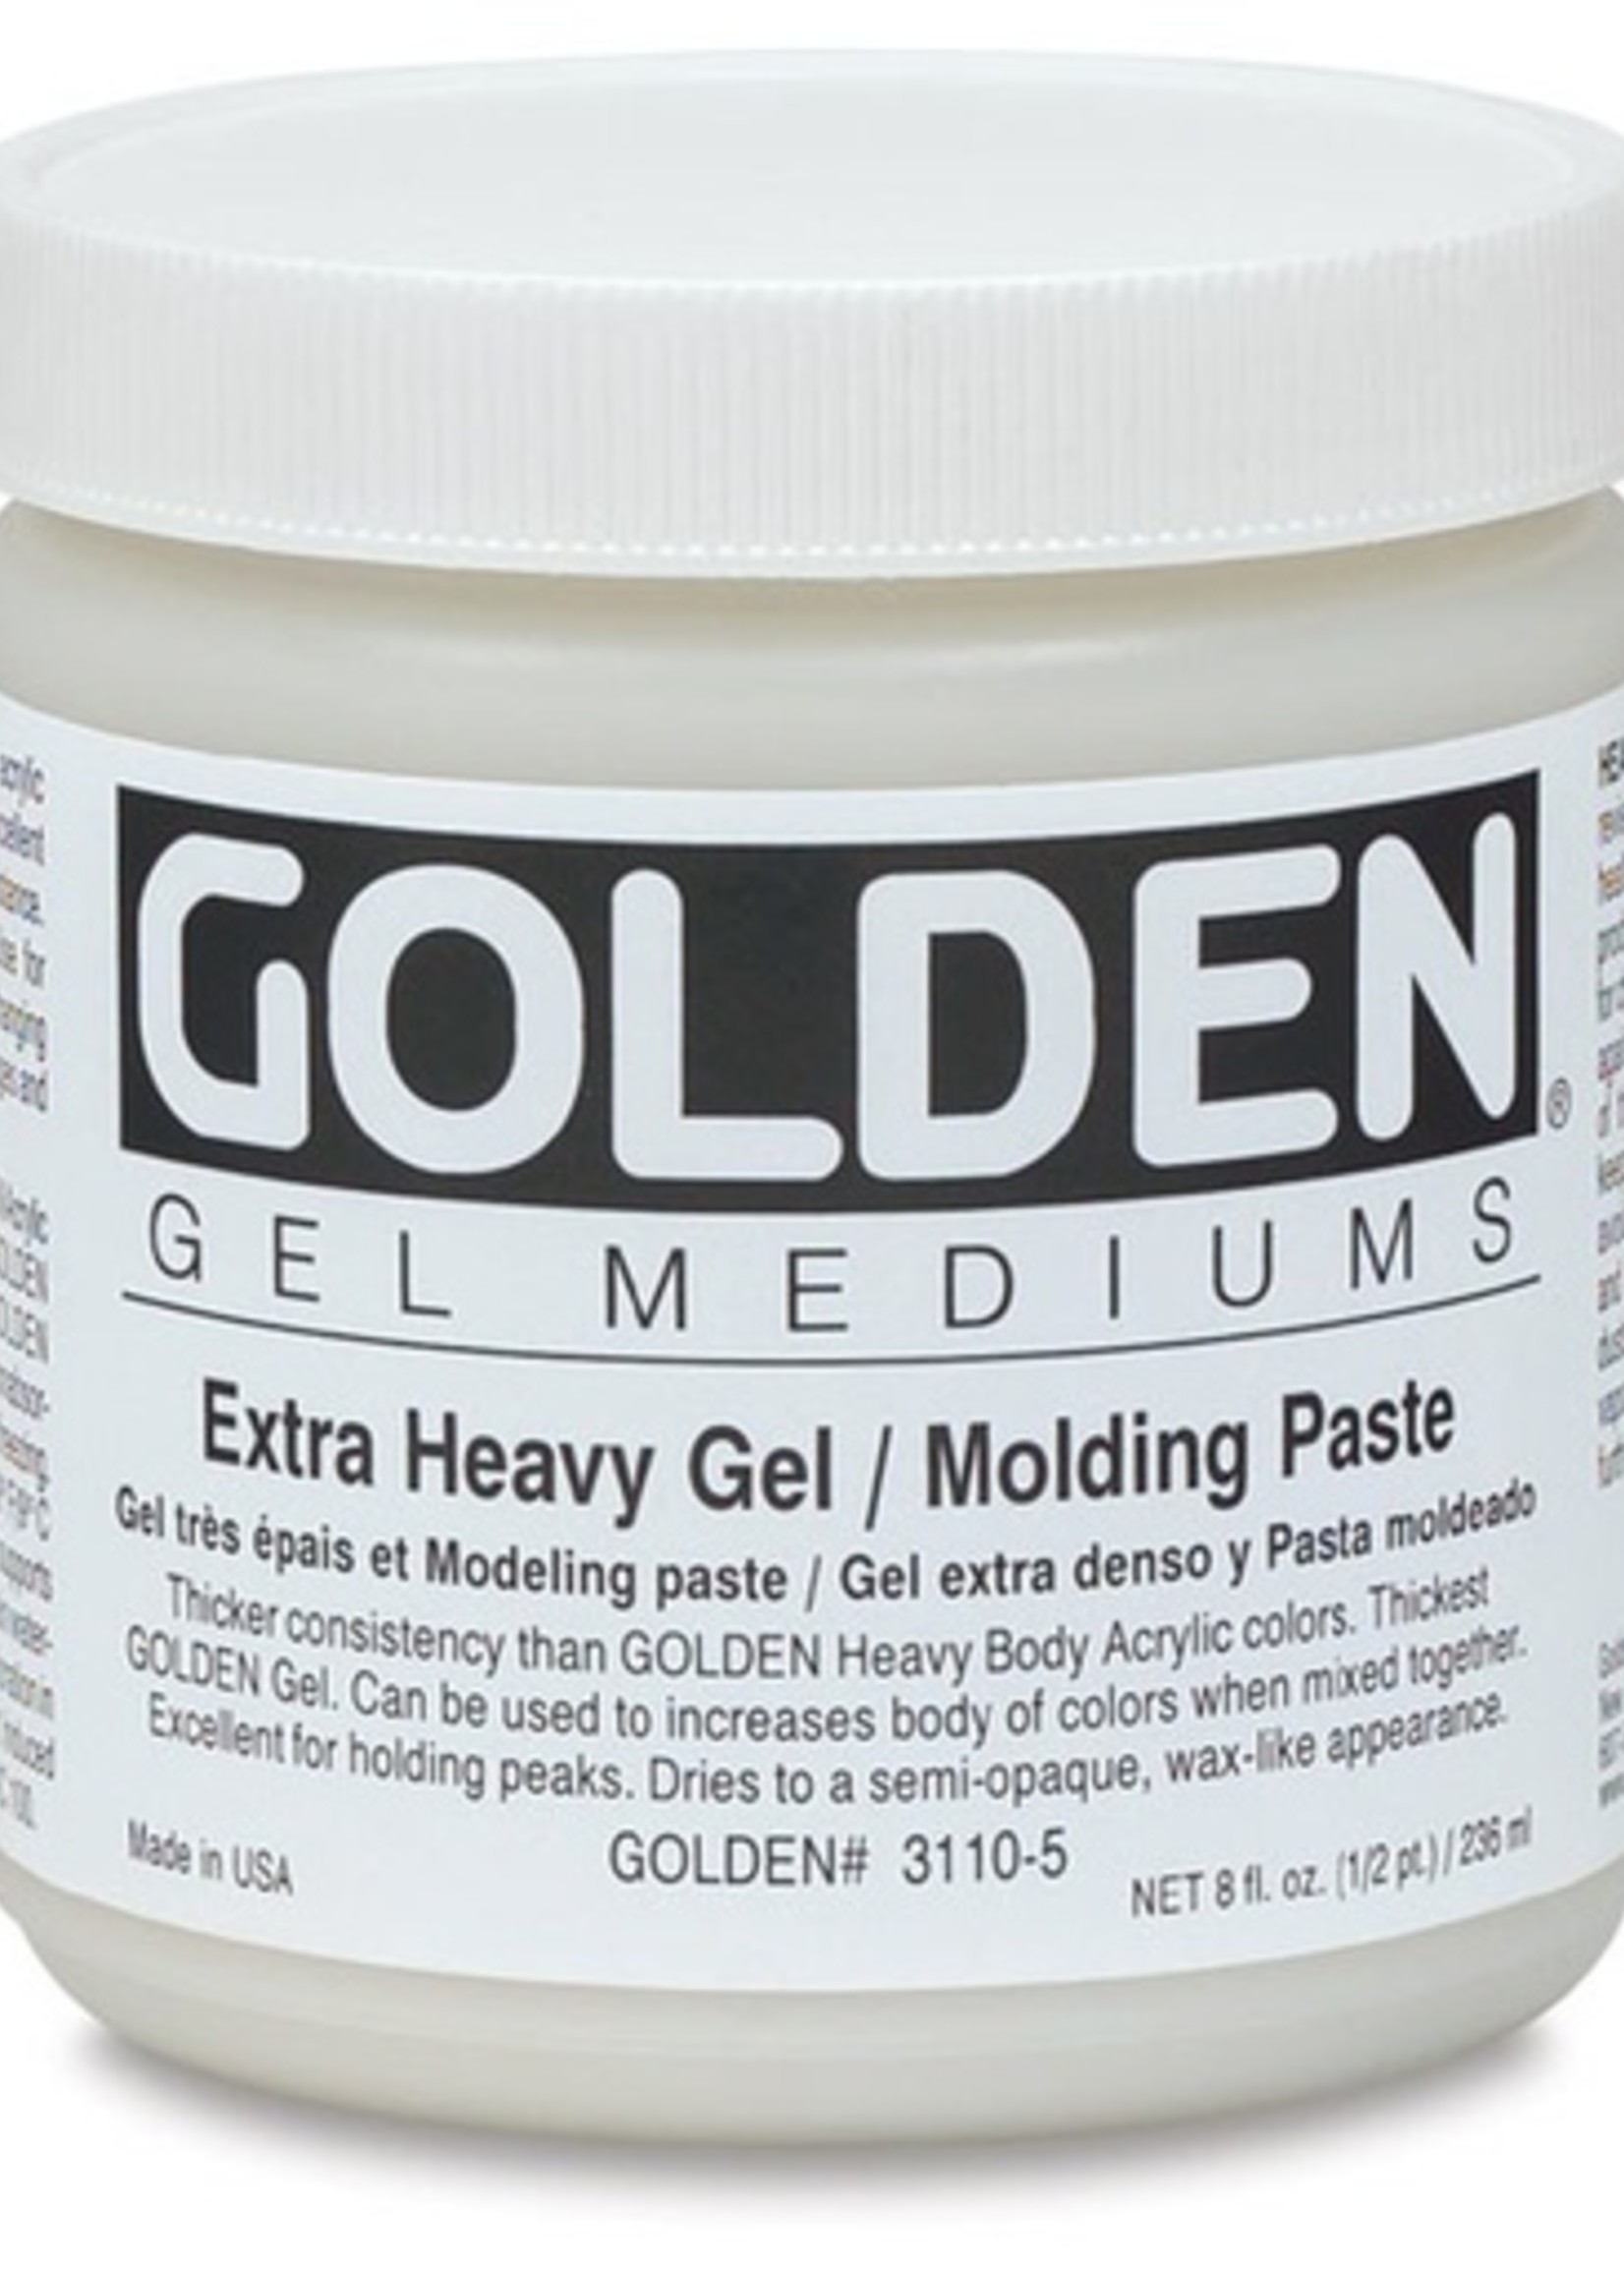 GOLDEN GOLDEN EXTRA HEAVY GEL/MOLDING PASTE